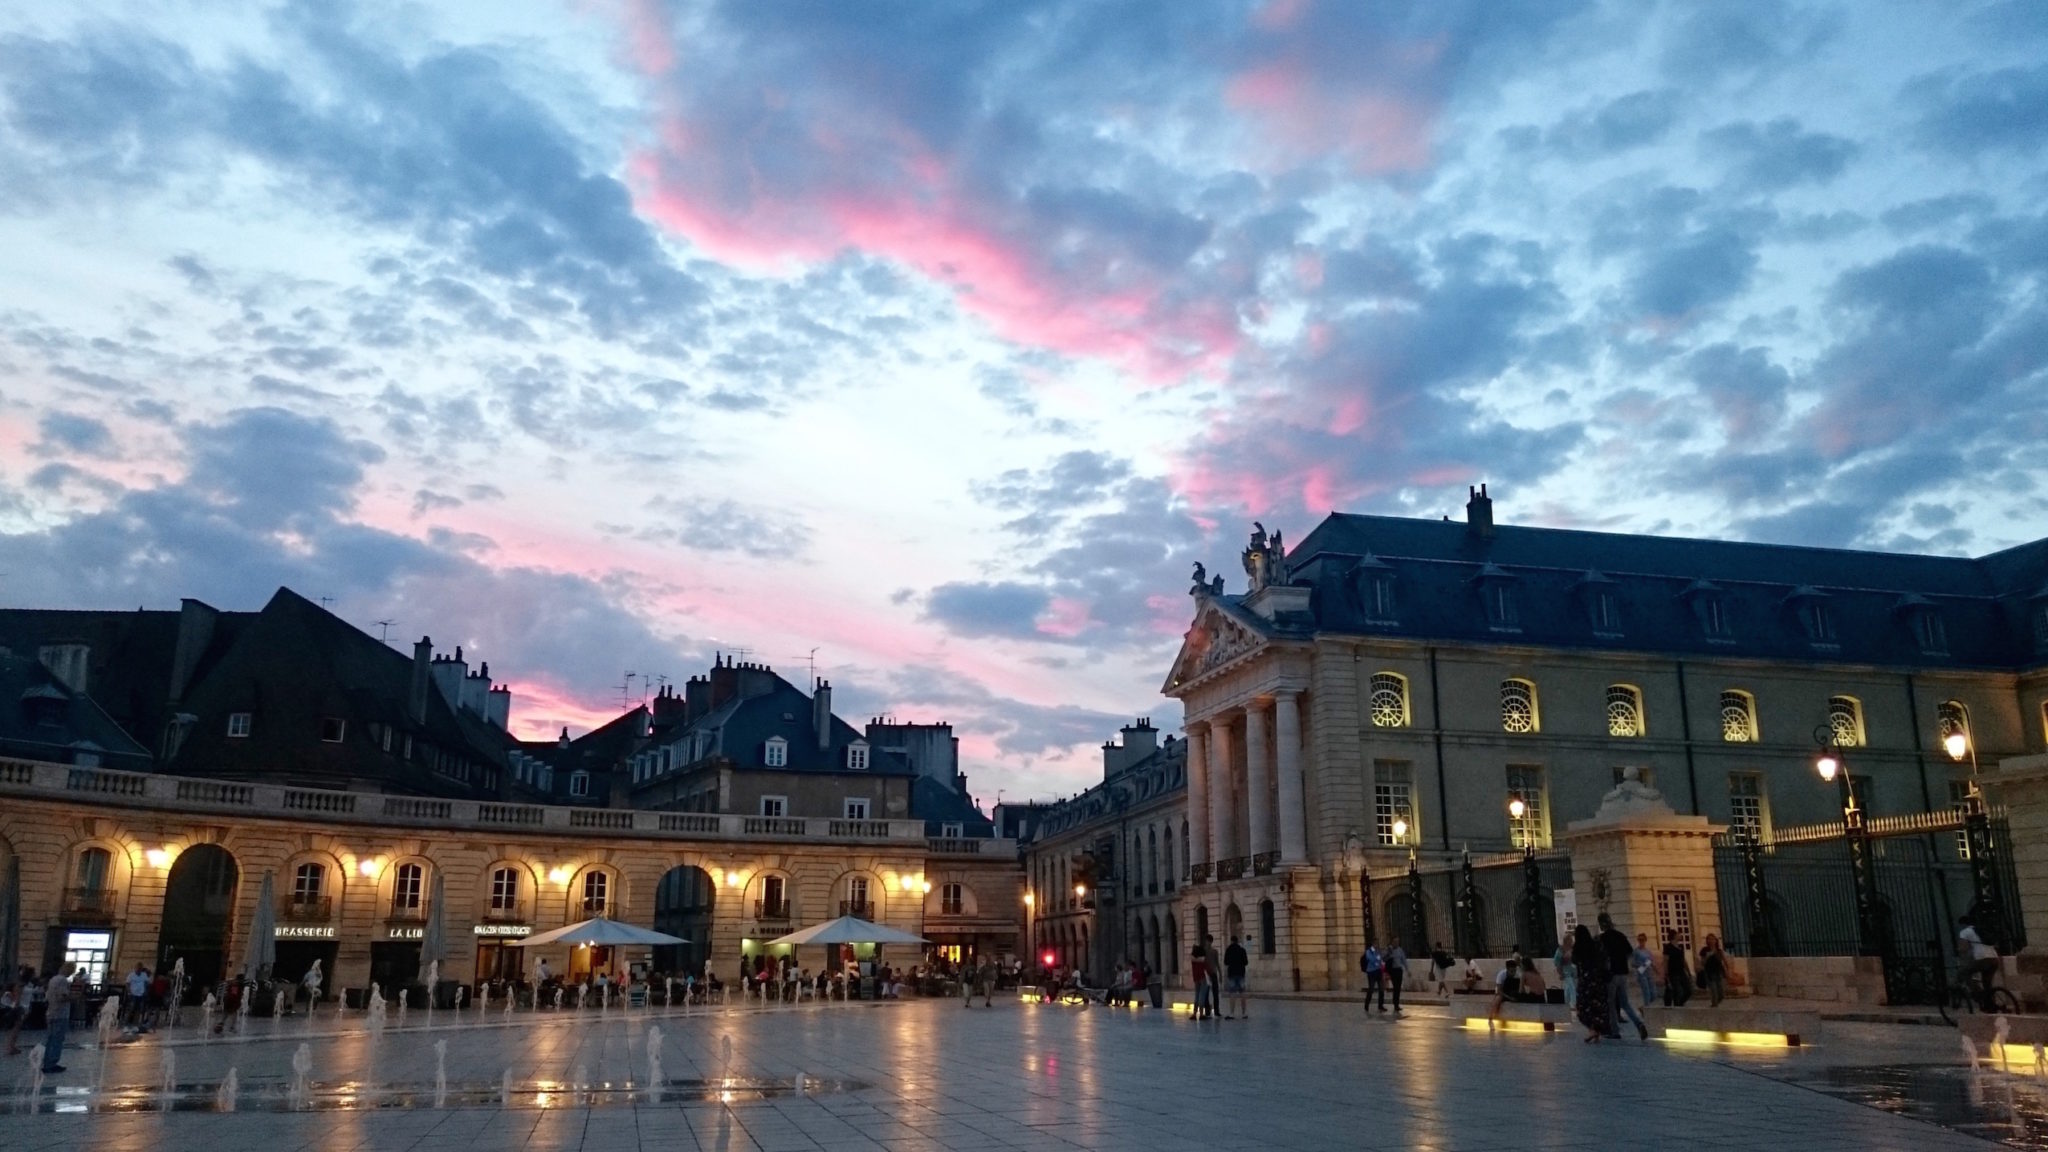 Sunset at Place de la Libération